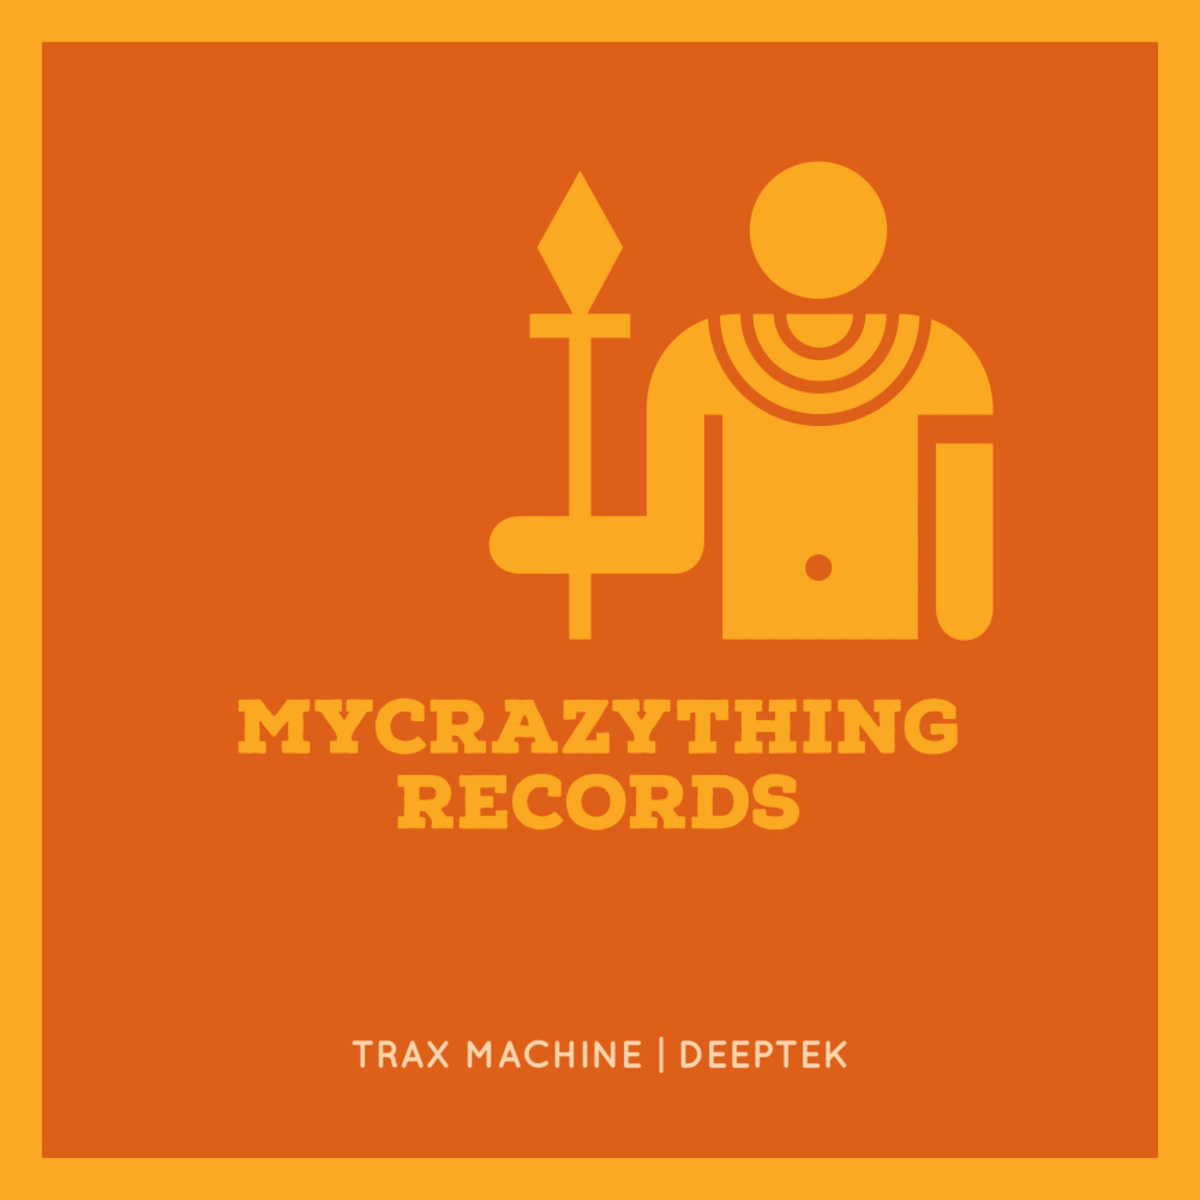 Trax Machine - Deeptek (Alan de Laniere Deeper Mix) / Mycrazything Records